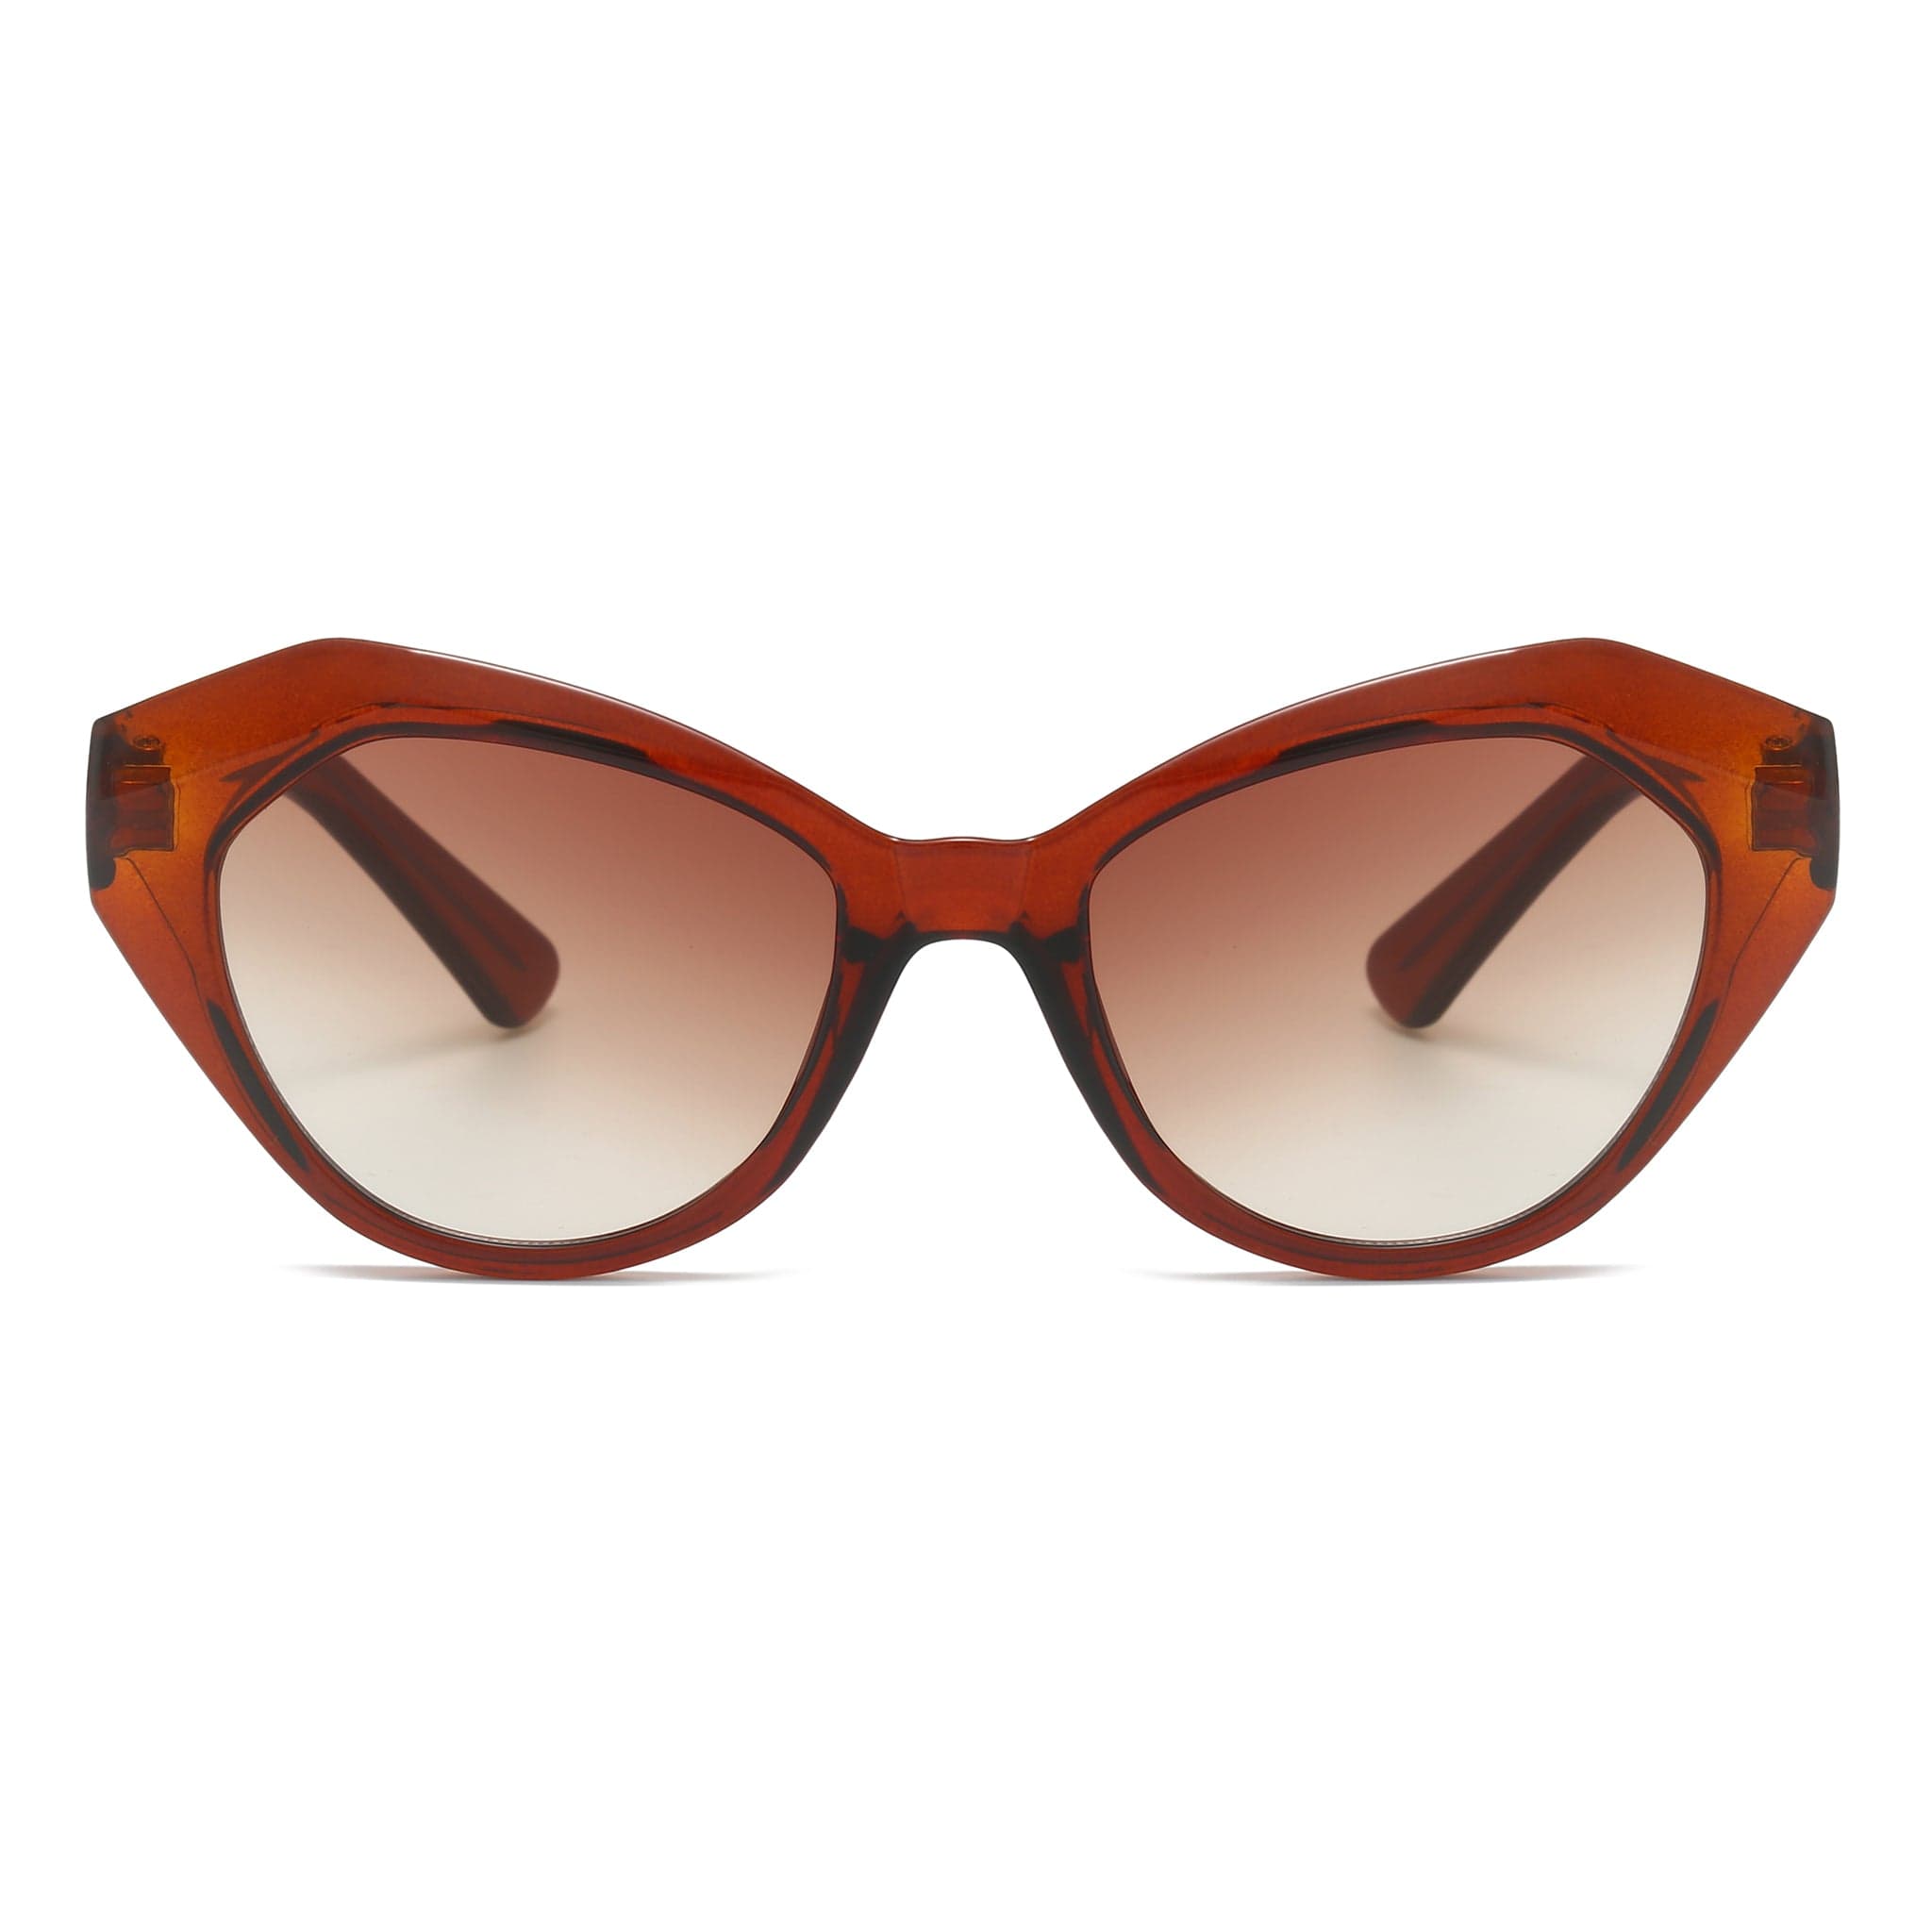 GIUSTIZIERI VECCHI Sunglasses Small / Light Apricot LunaCat Uno